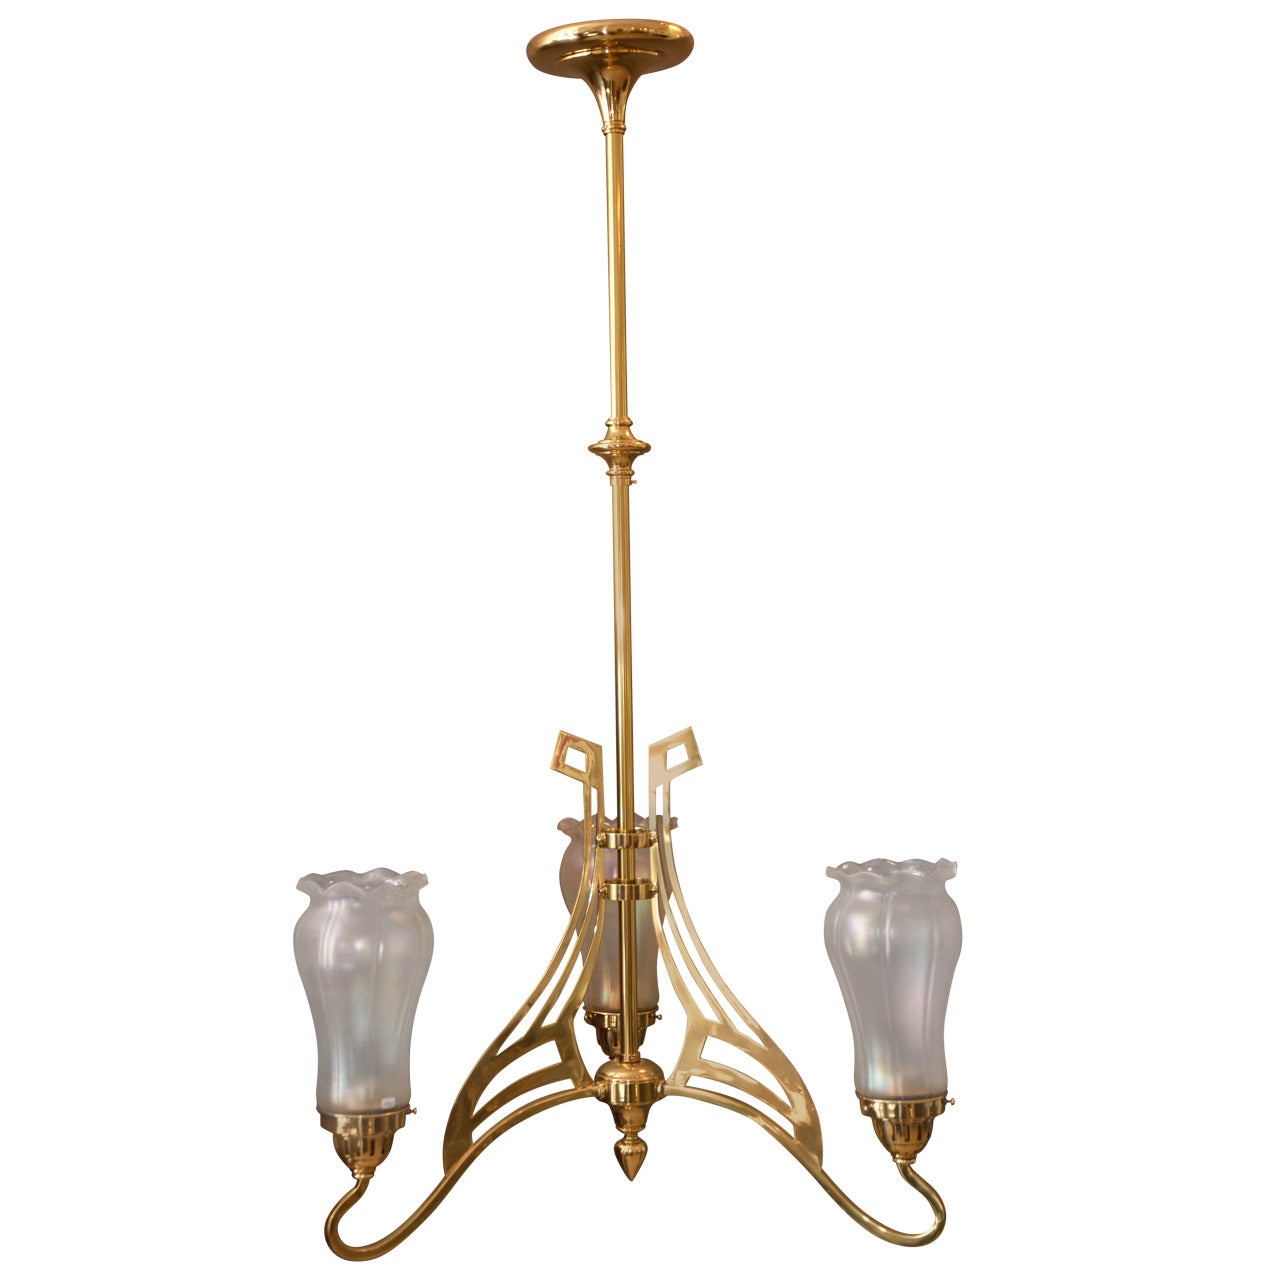 Art Nouveau three-Light Ceiling Lamp with original glass Shade